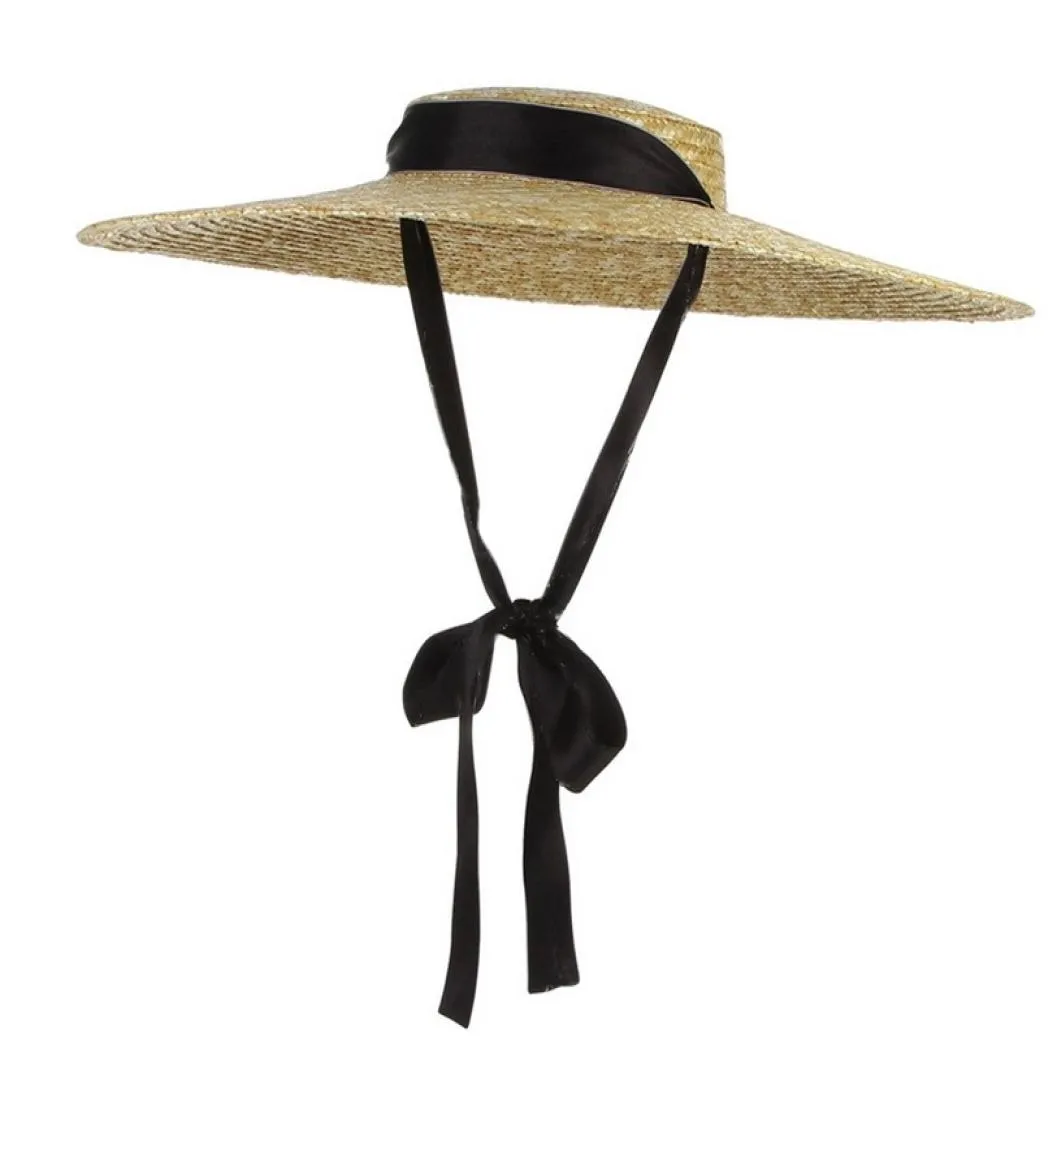 Summer Big Natural Pszenice Straw Hats for Women Handmad szeroka brzegi plażowe czapki eleganckie, płaskie, długie wstążki koronkowa kapelusz słoneczny 22044034186